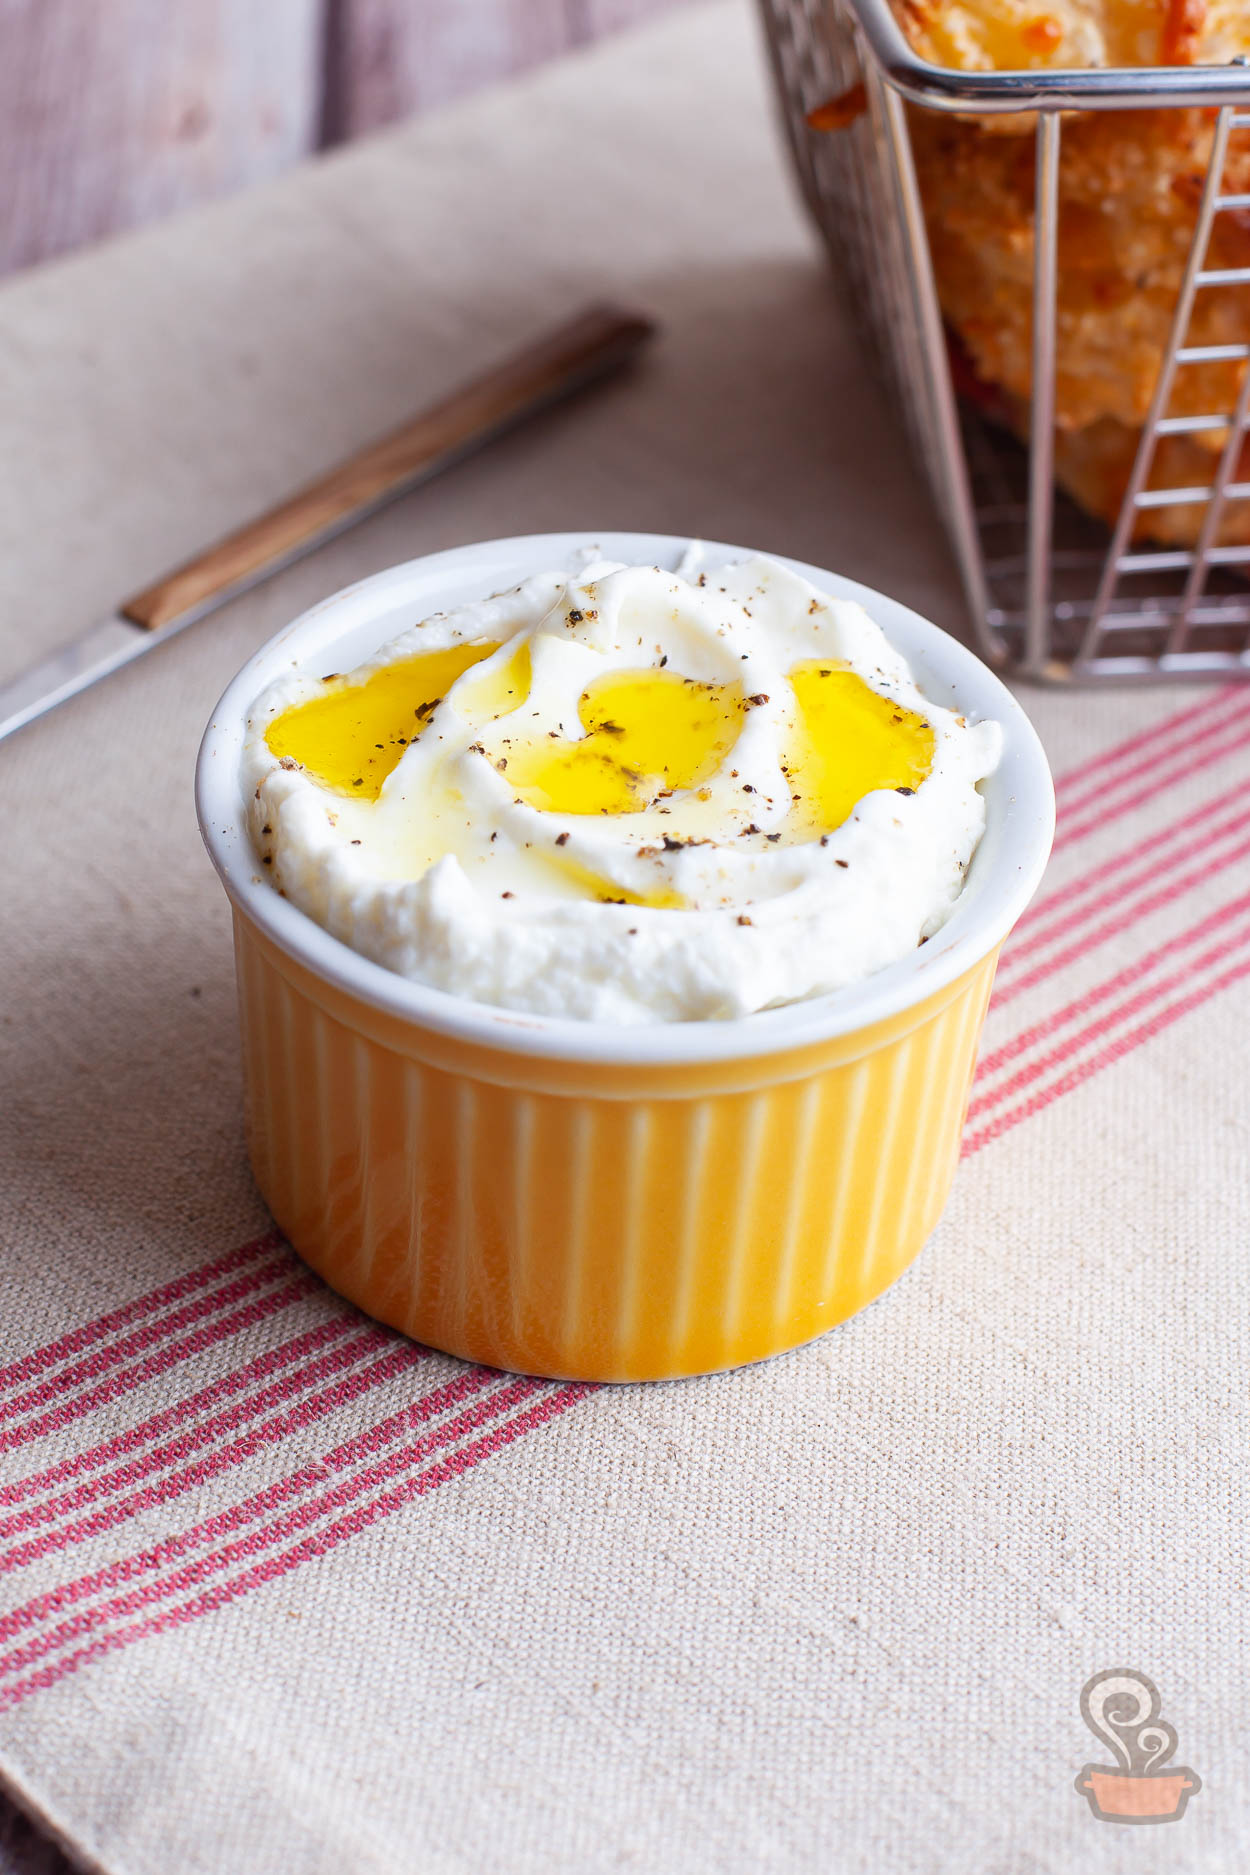 Cream cheese saudável - Quero Comida de Verdade - Alimentação Saudável